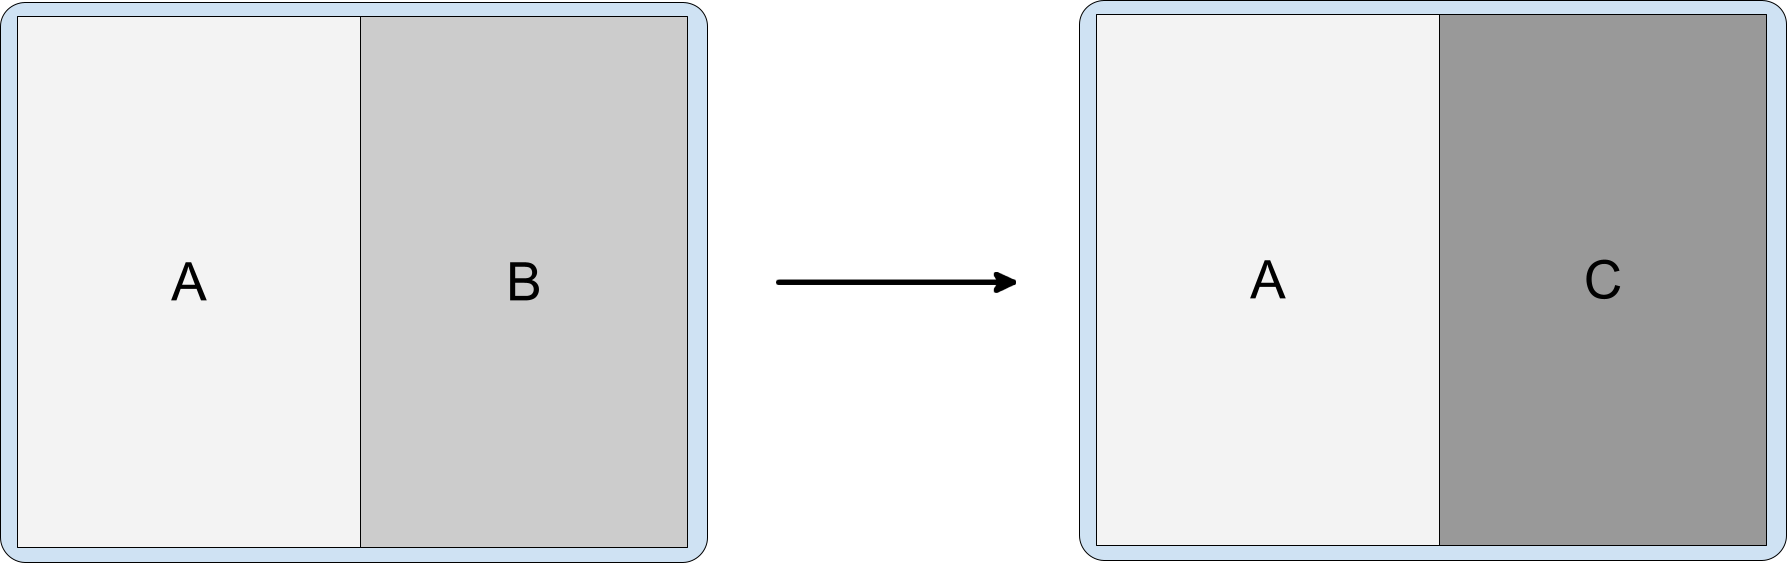 Fractionnement contenant les activités A, B et C, avec C empilé sur B.